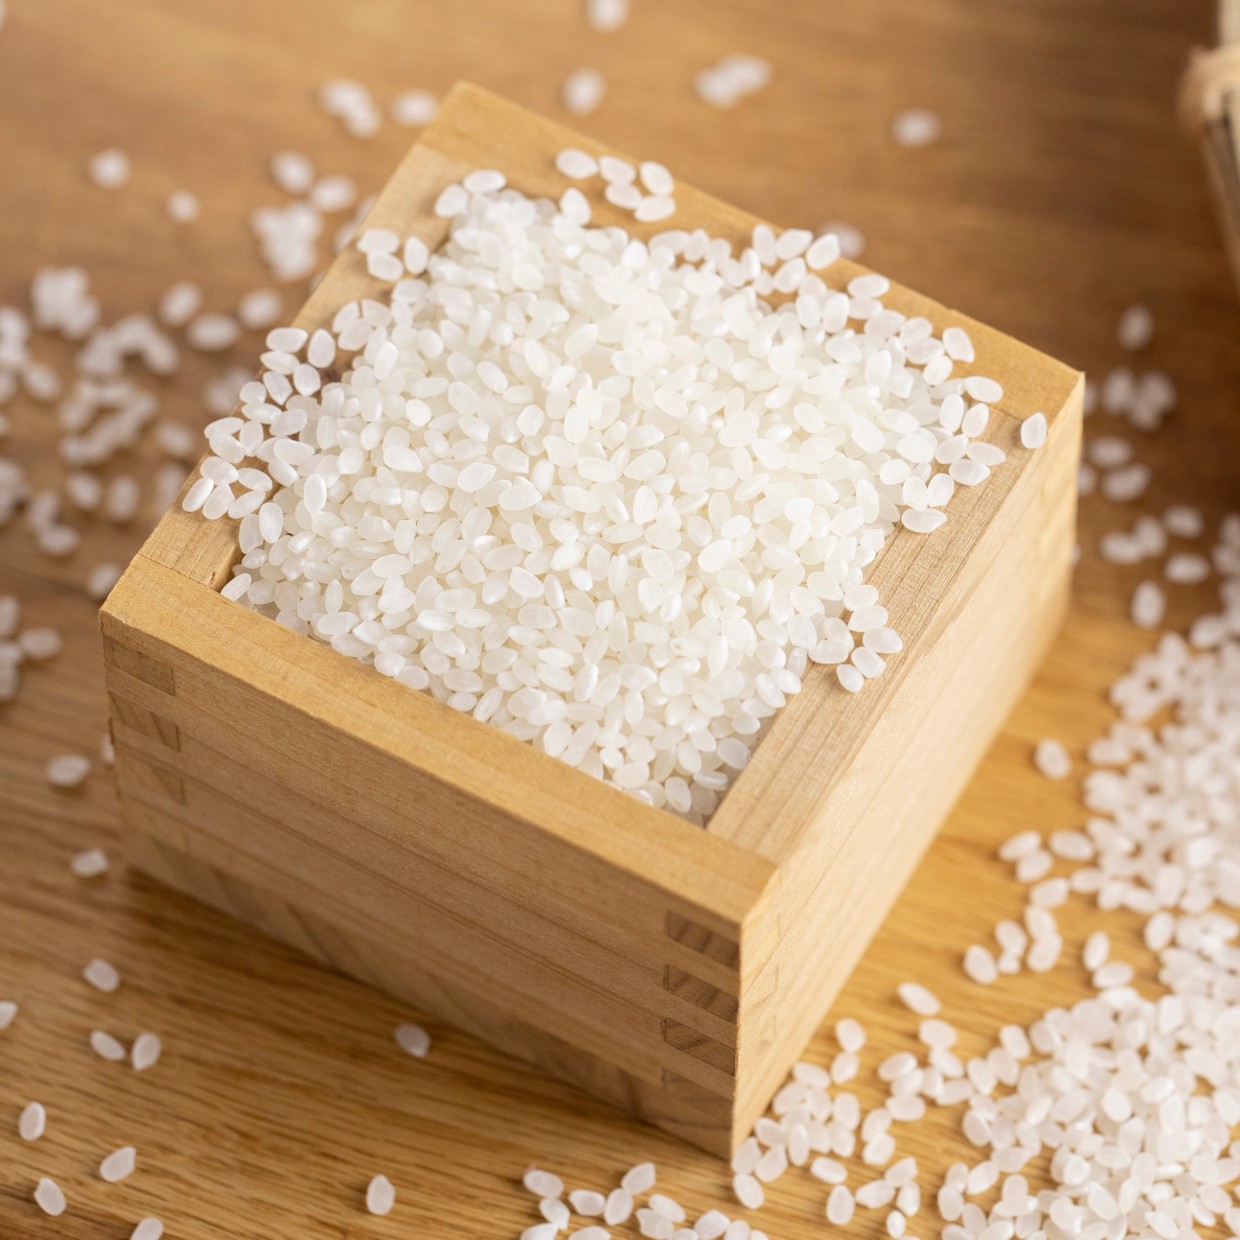  床にお米をこぼしてしまった…。散らかった「お米」を簡単に拾う方法 